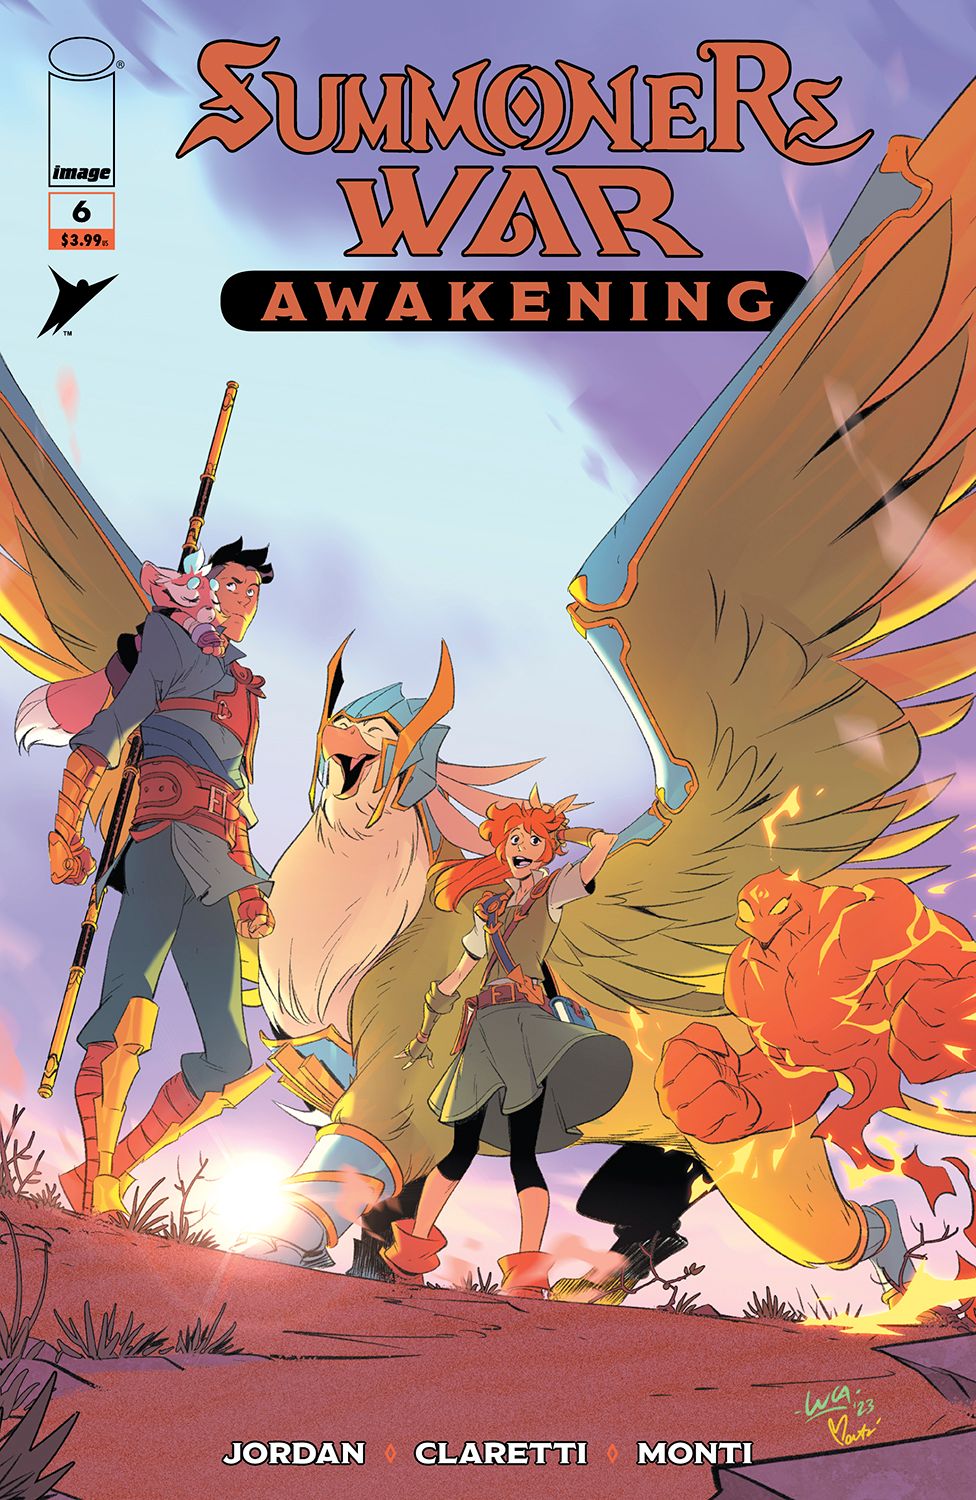 Summoner's War: Awakening #6 Comic